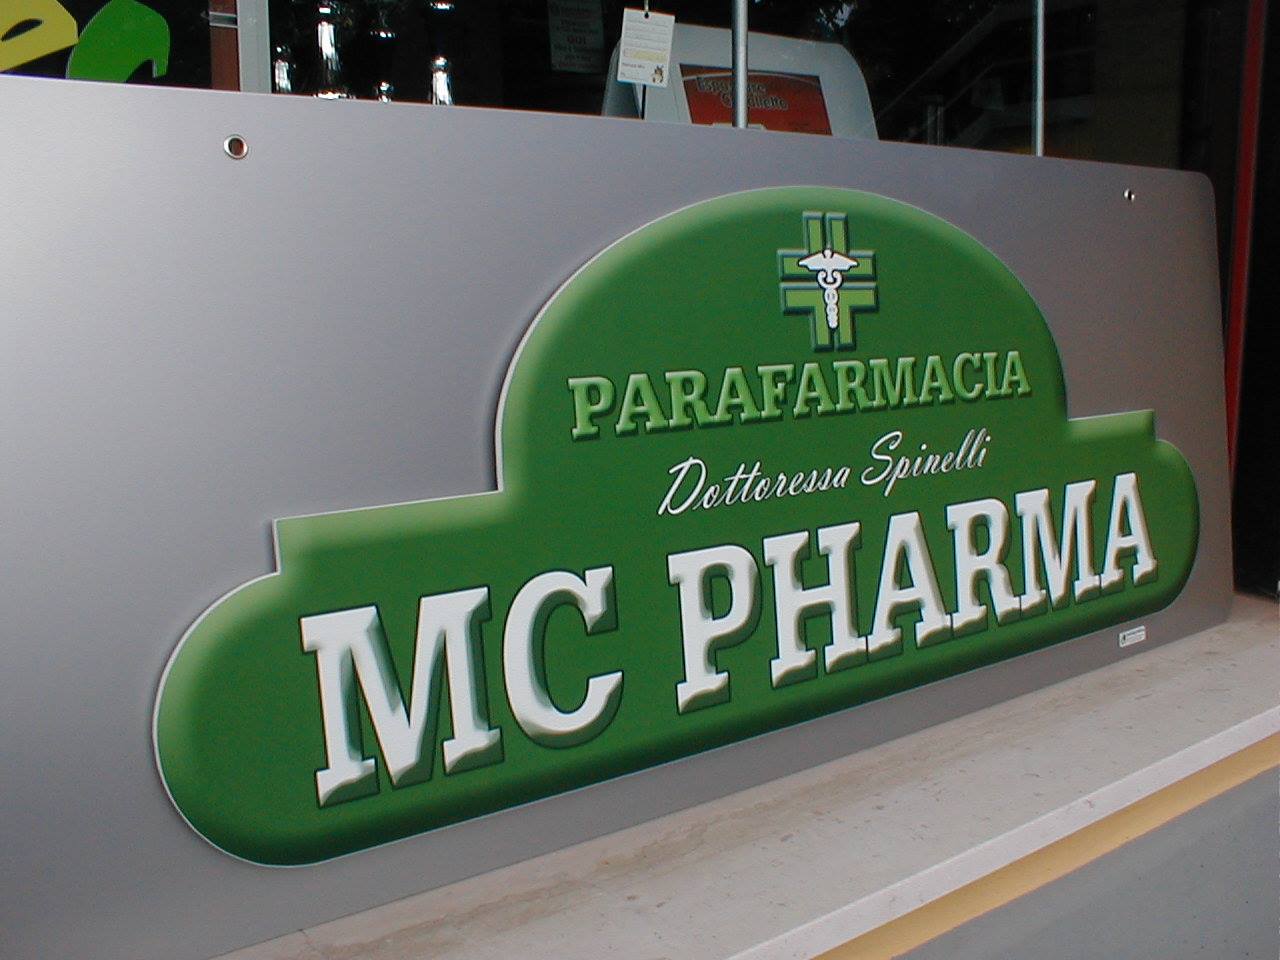 MC Pharma